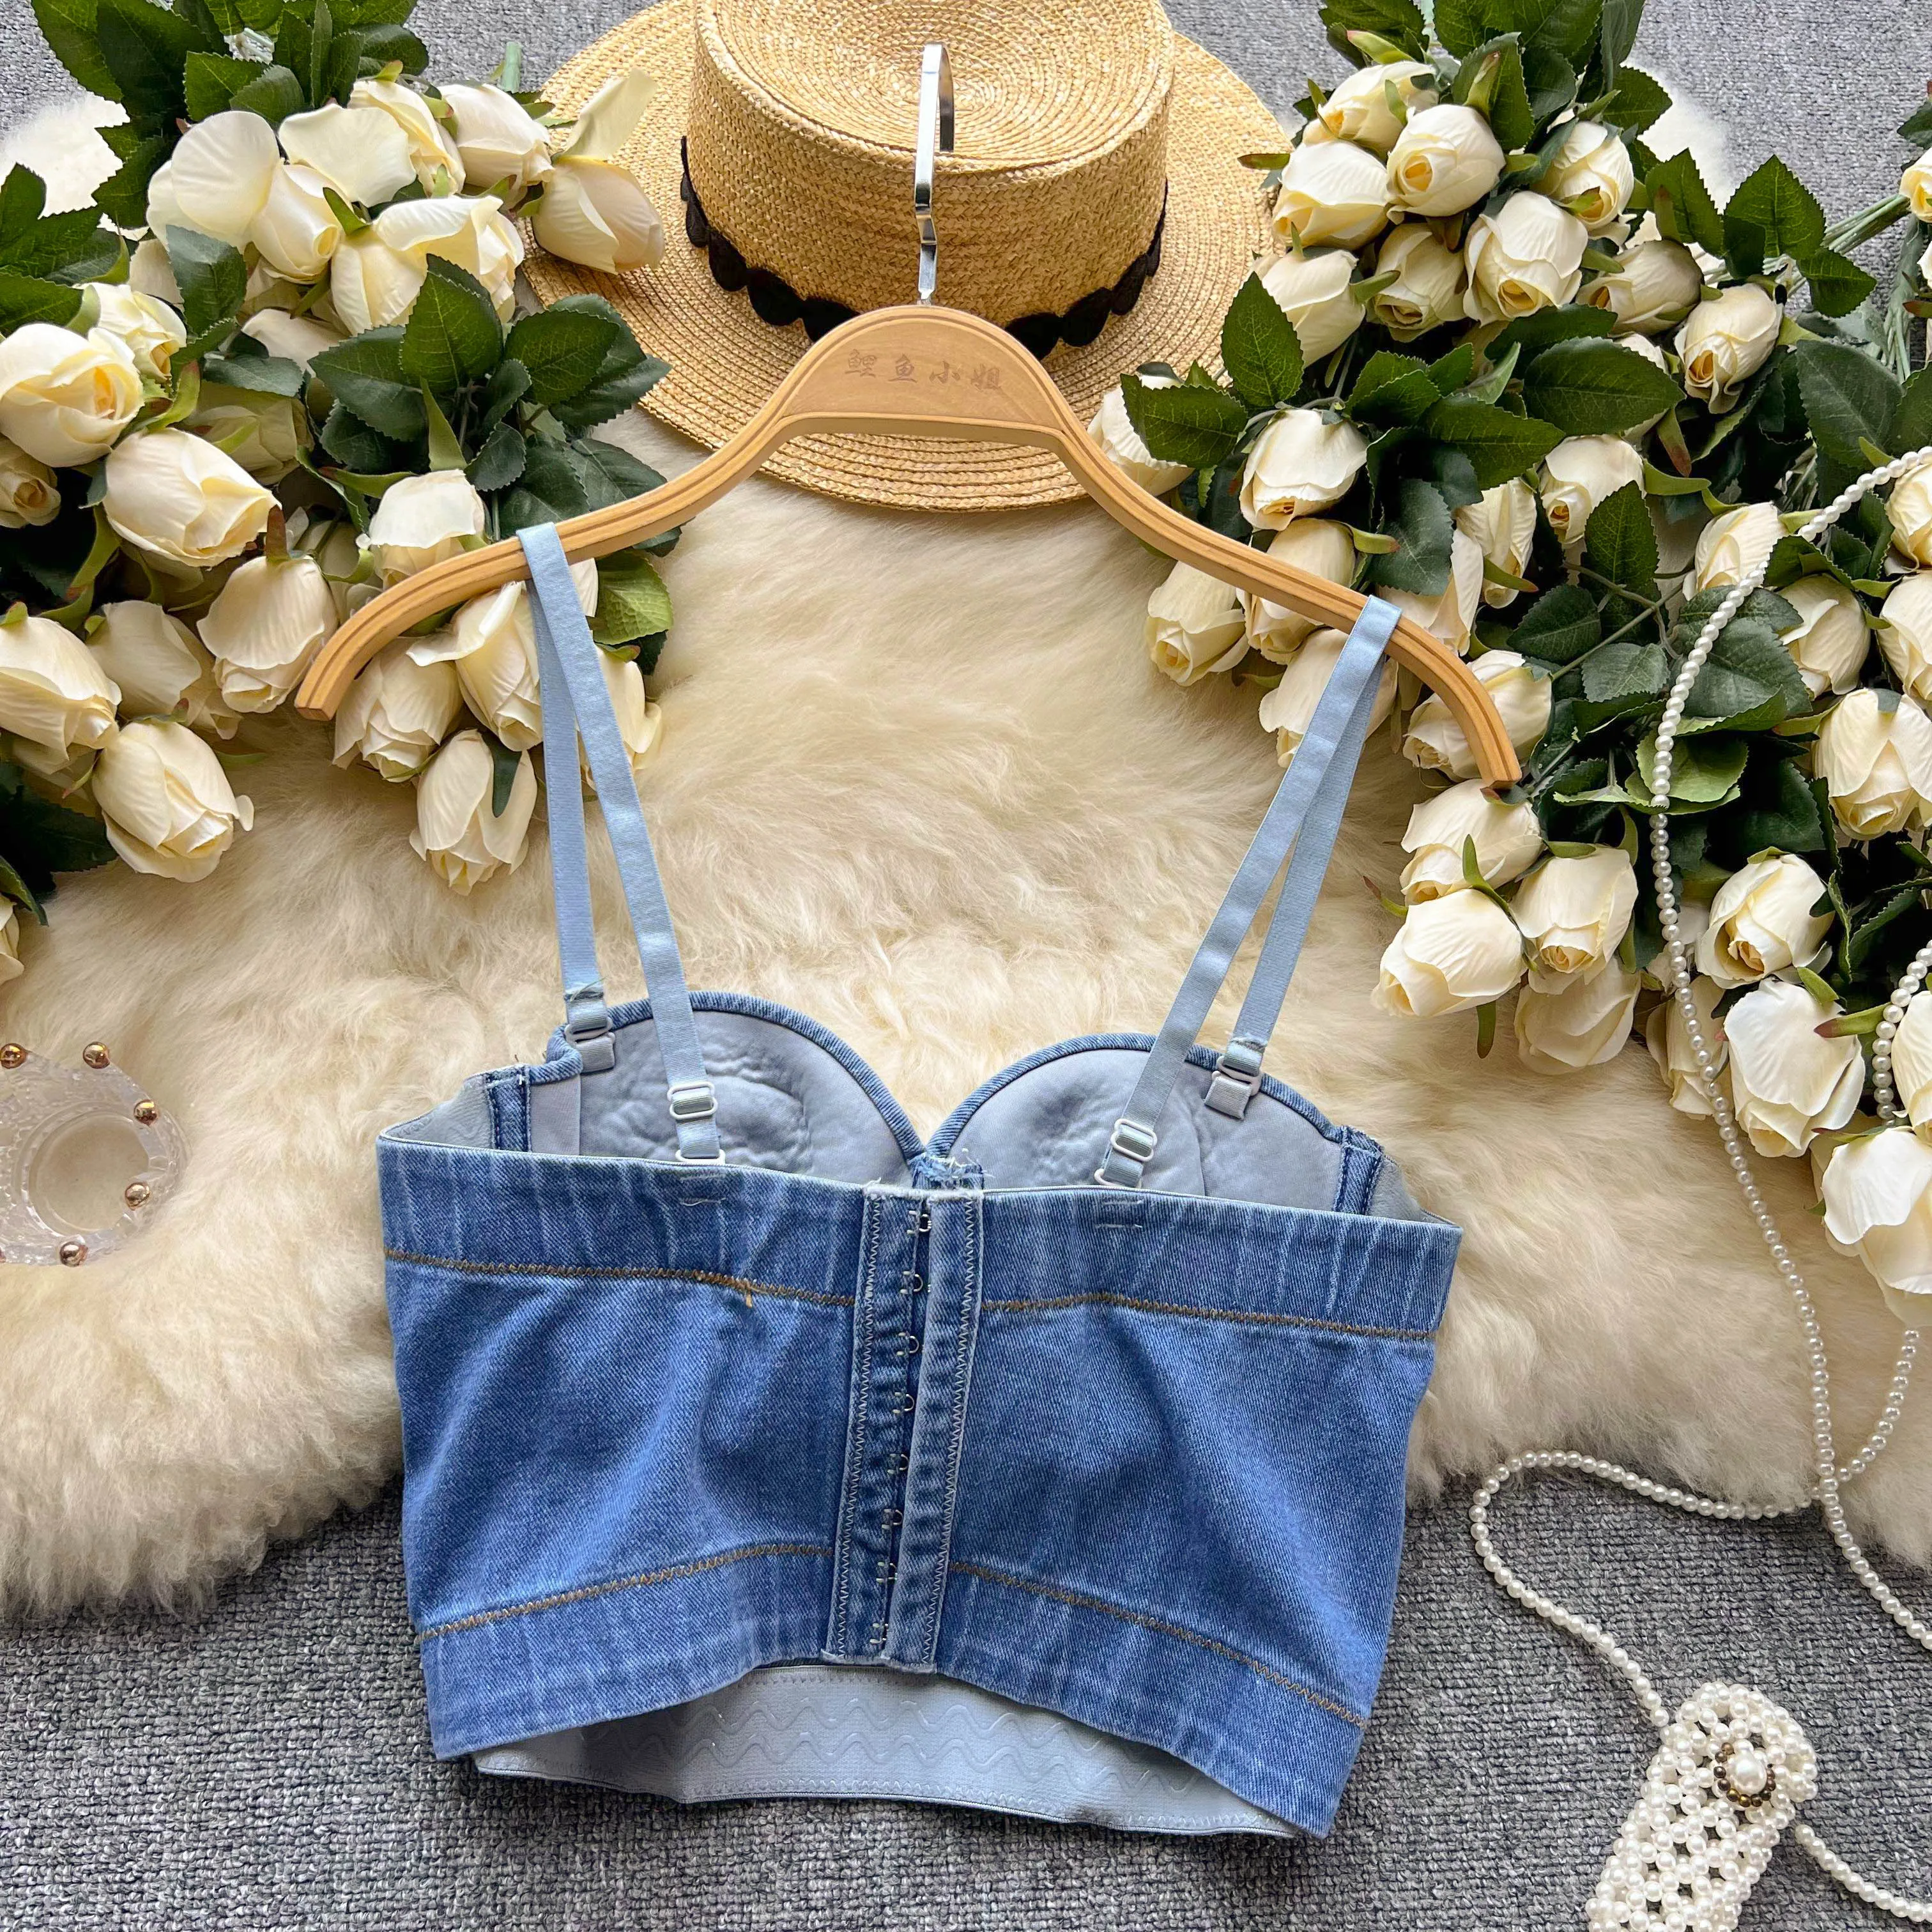 Сексуальные и уникальные маленькие МАЙКИ на подтяжках для женской верхней одежды, летняя подкладка, тяжелая джинсовая ткань с цепочкой, инкрустированная бриллиантами